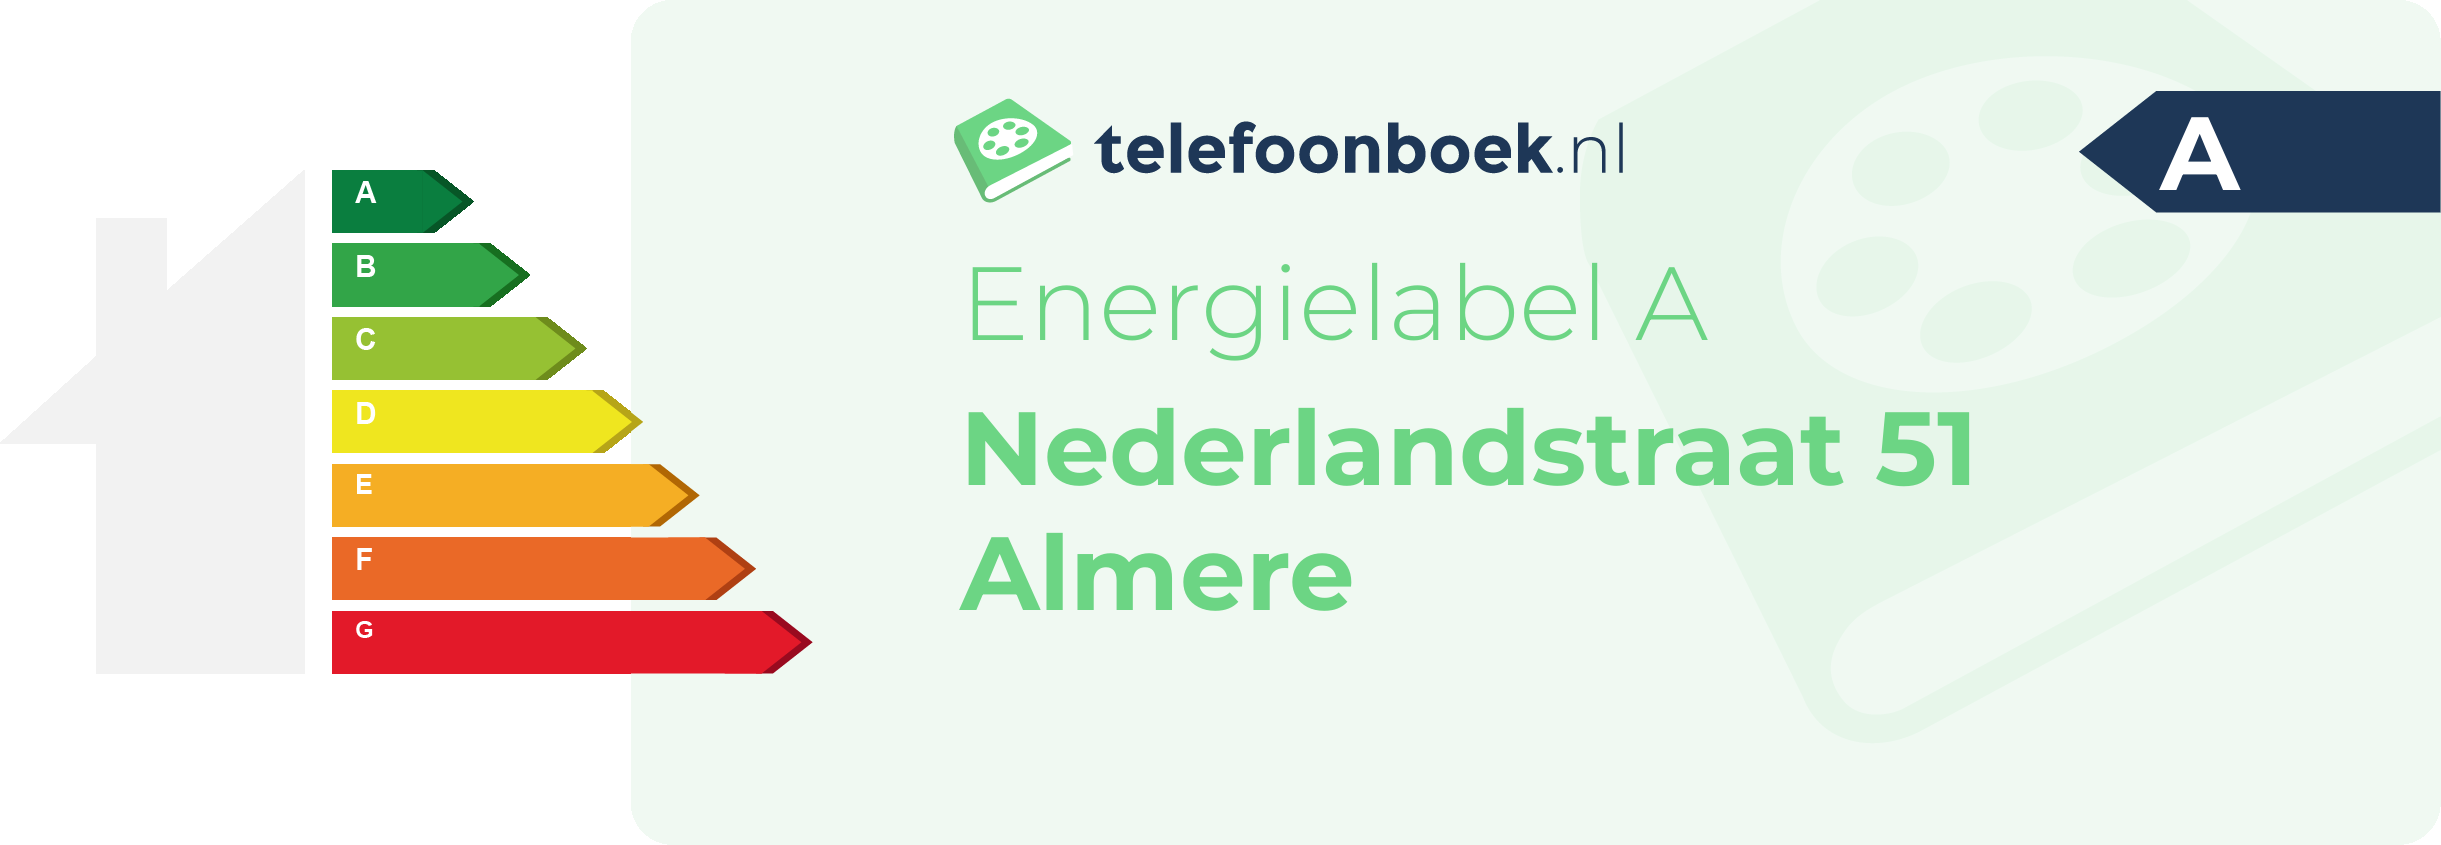 Energielabel Nederlandstraat 51 Almere